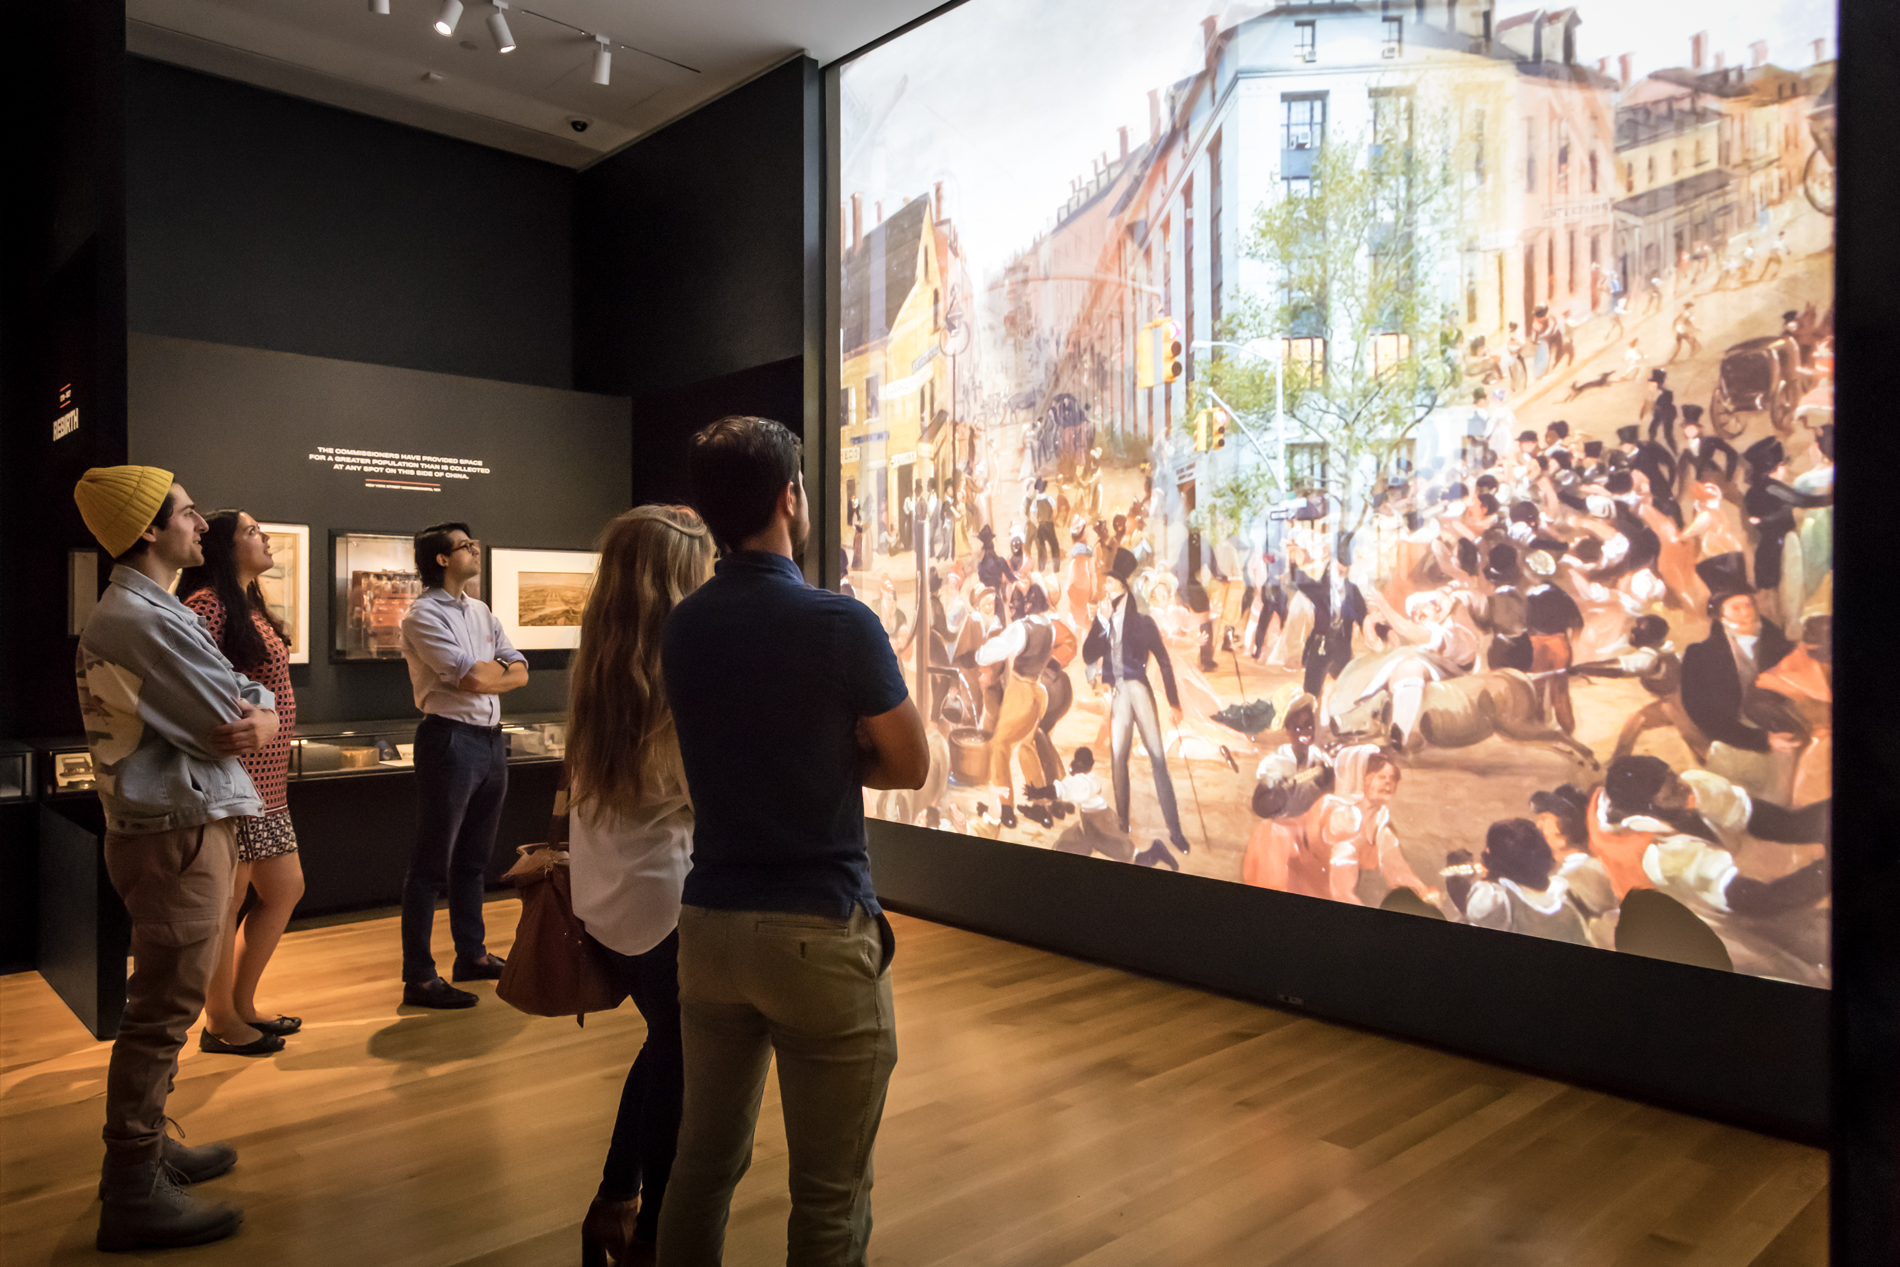 Les visiteurs regardent une grande projection dans un espace d'exposition